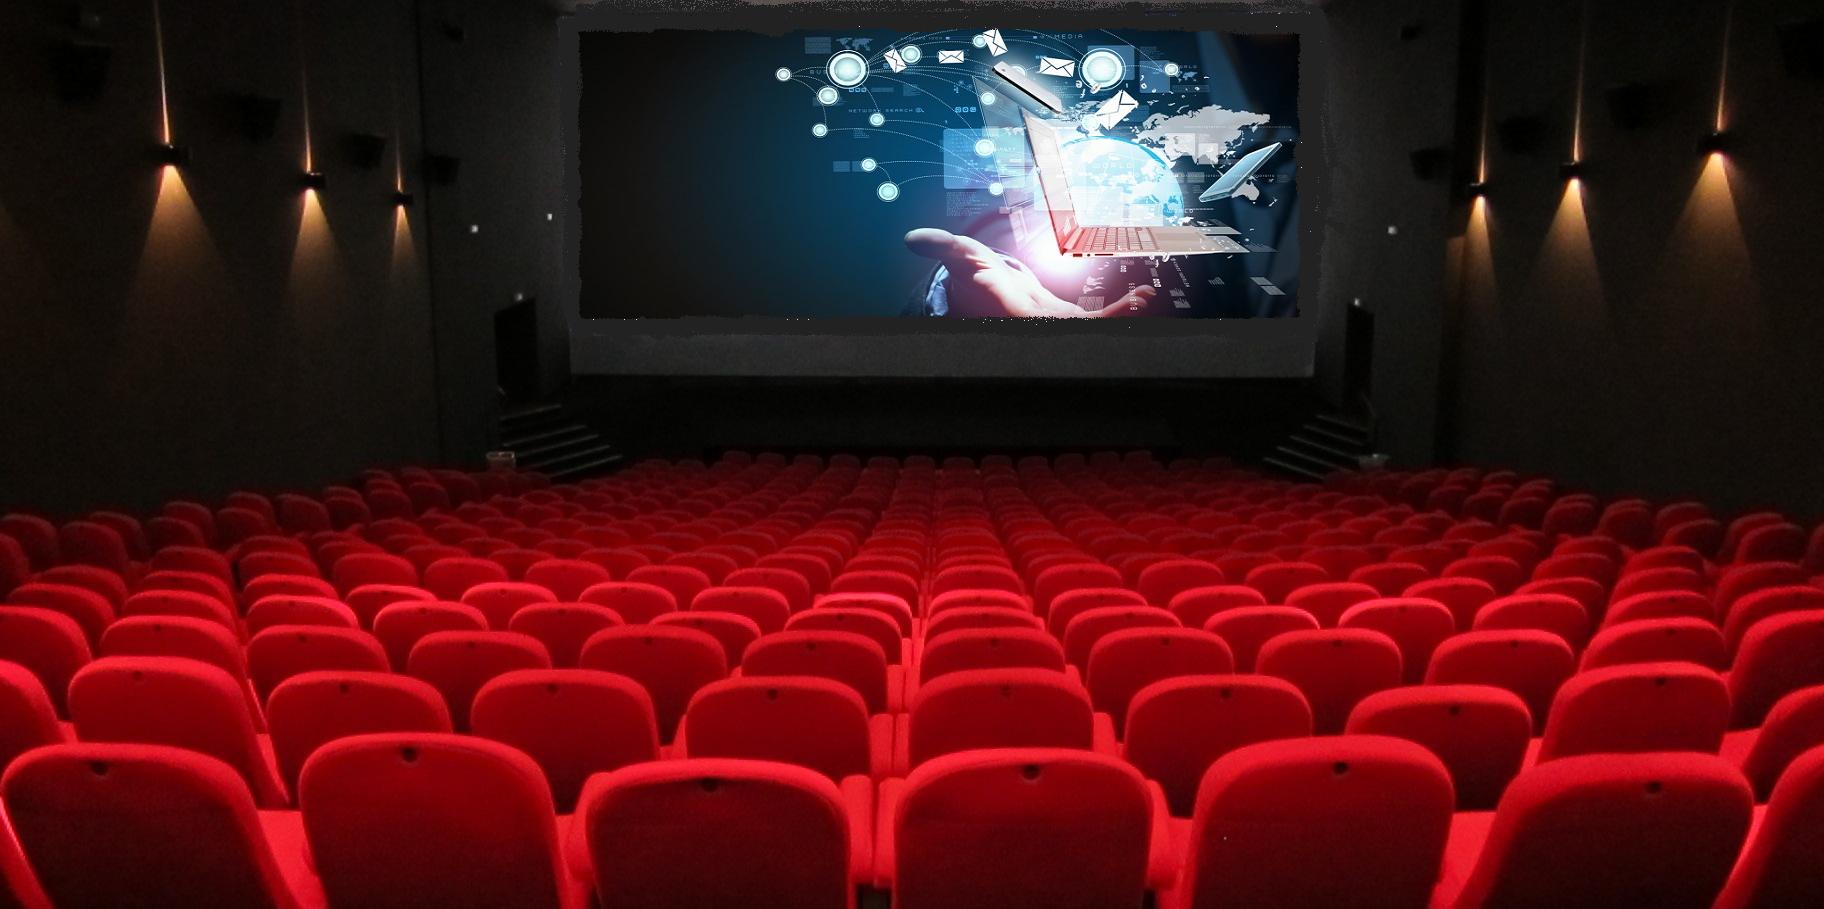 12 escenas de cine y un concurso que no tendrían sentido con la tecnología actual